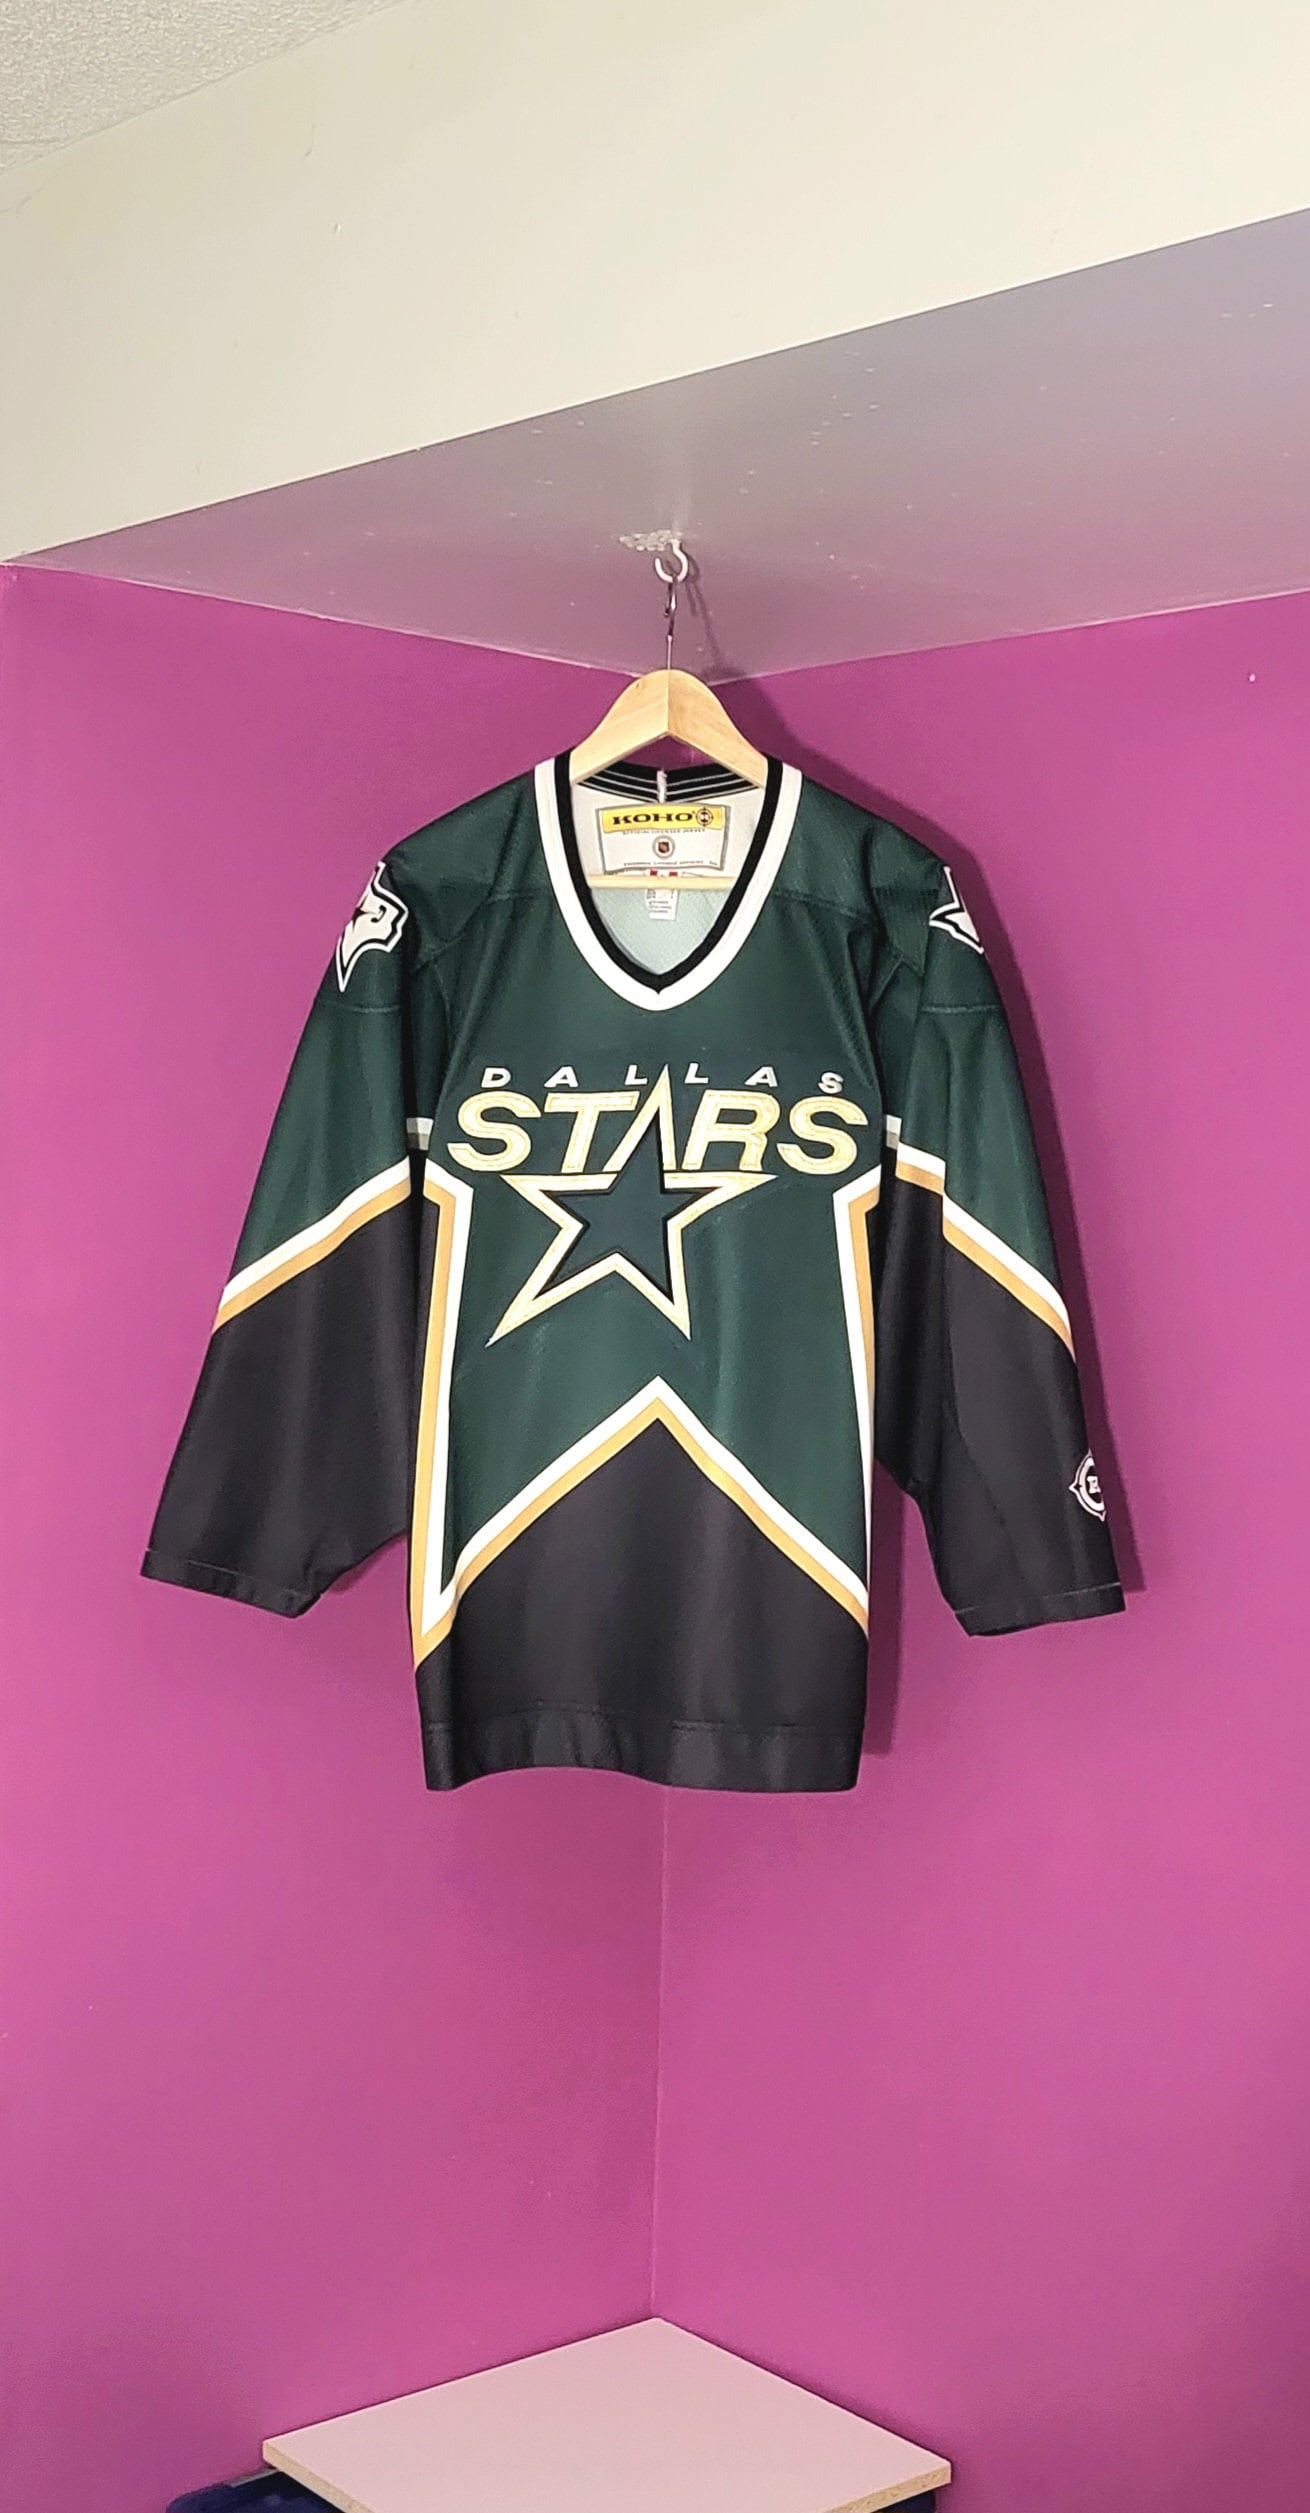 Dallas Stars Hockey Jerseys - NHL Custom Throwback Jerseys